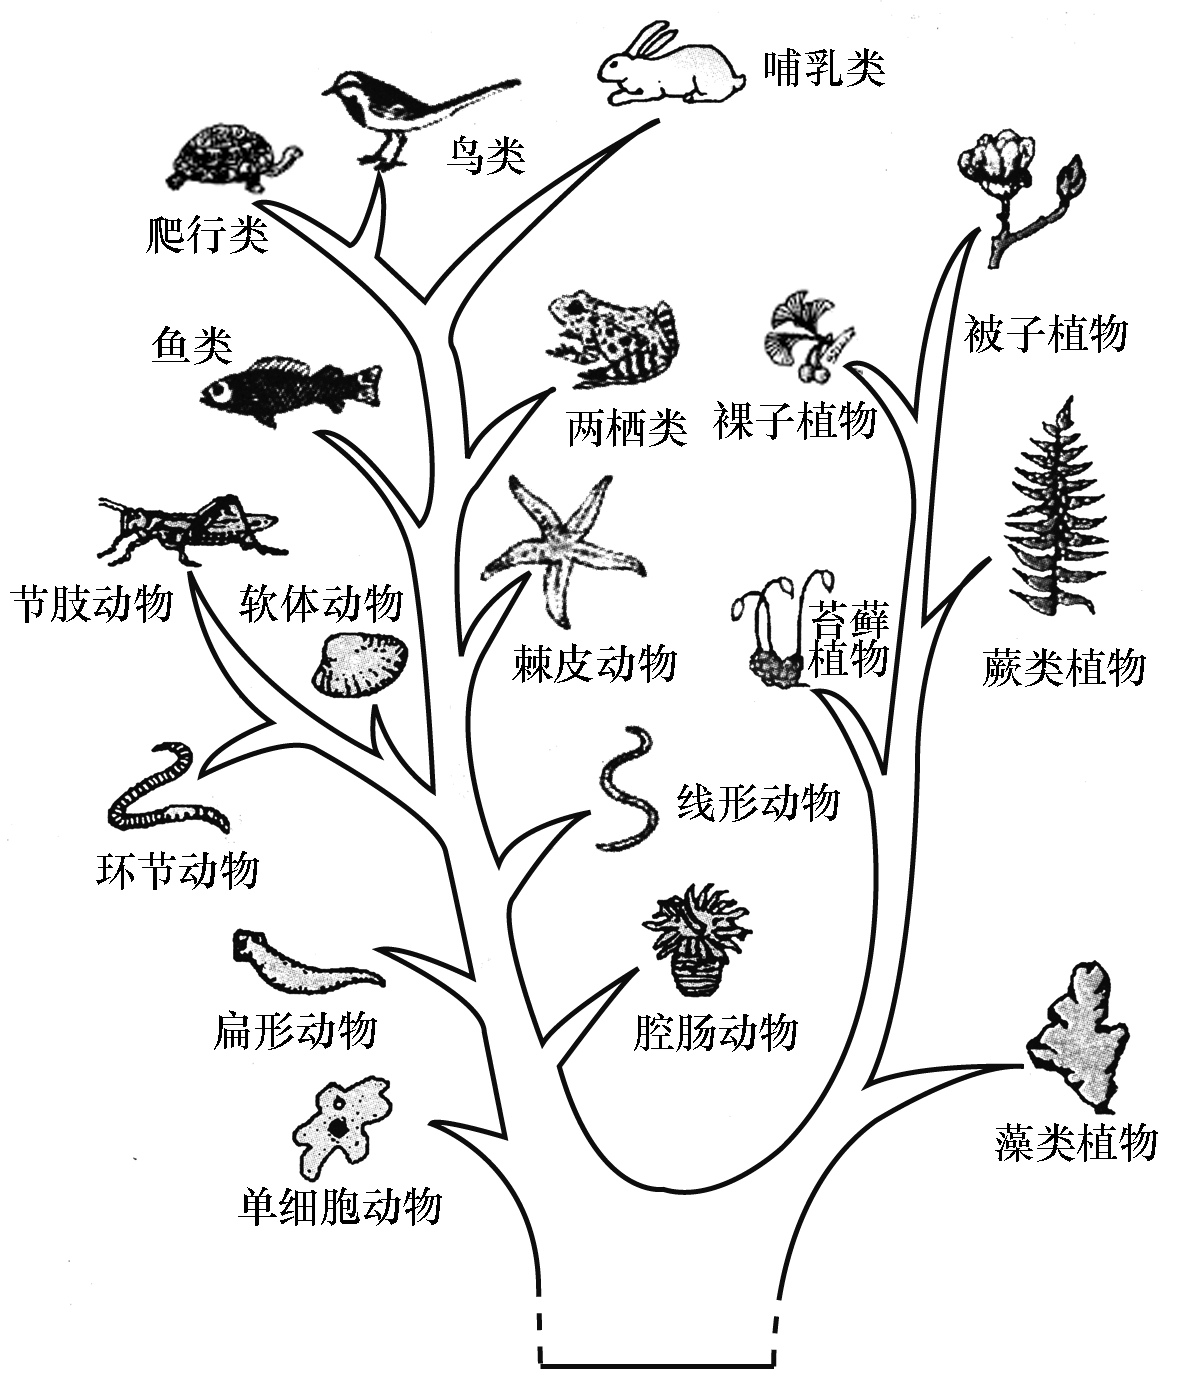 生物进化树手抄报图片